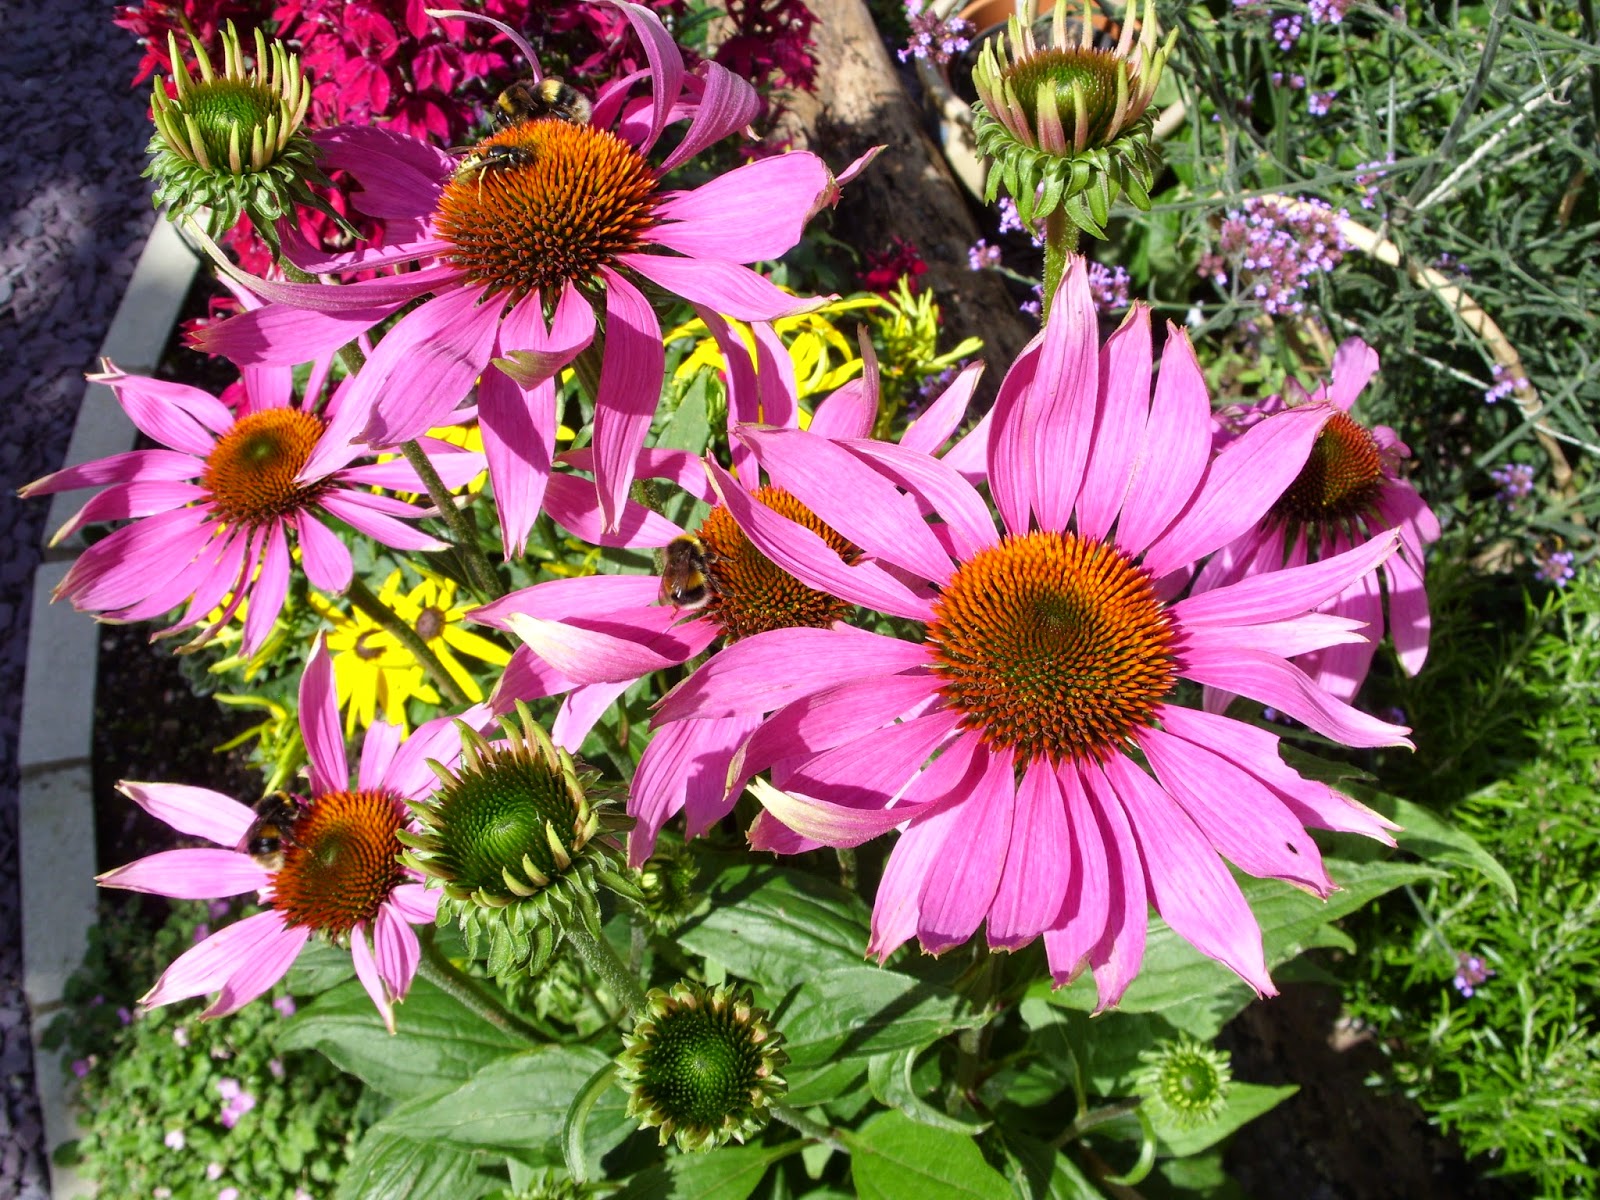 Kelli's Northern Ireland Garden: August Flowers - Blogger's Bloom Day